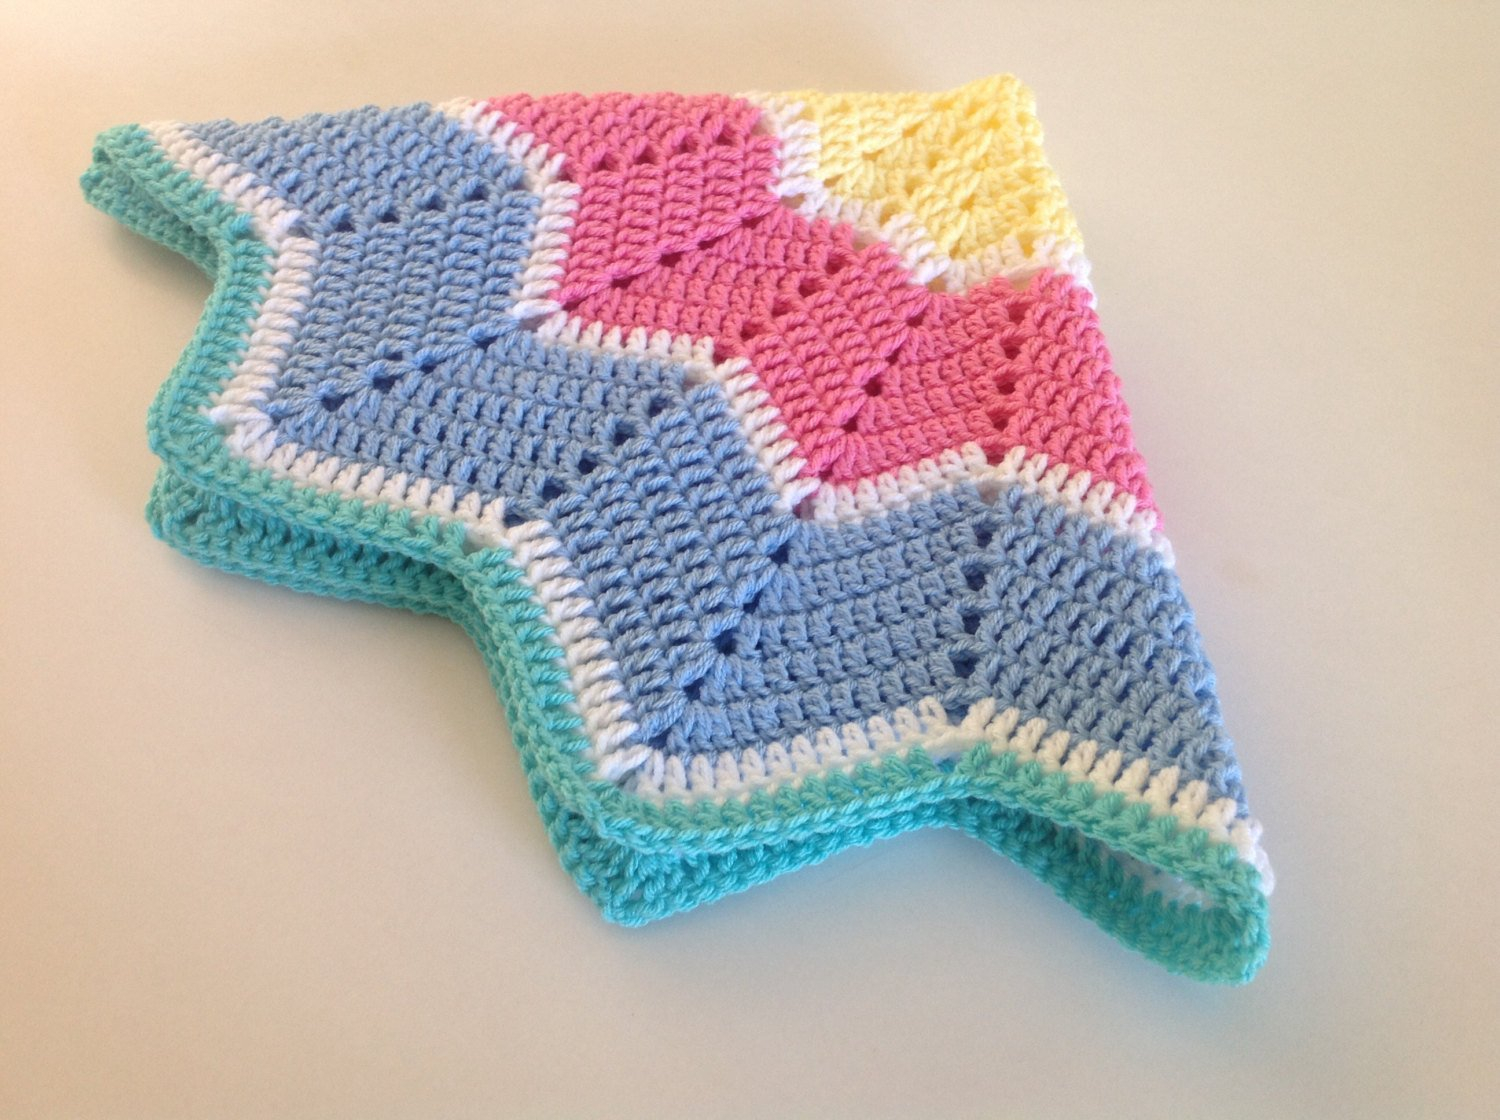 Star Baby Blanket Crochet Pattern Ba Blanket Crochet Star Blanket Pram Blanket Unfinished Blanket Chest